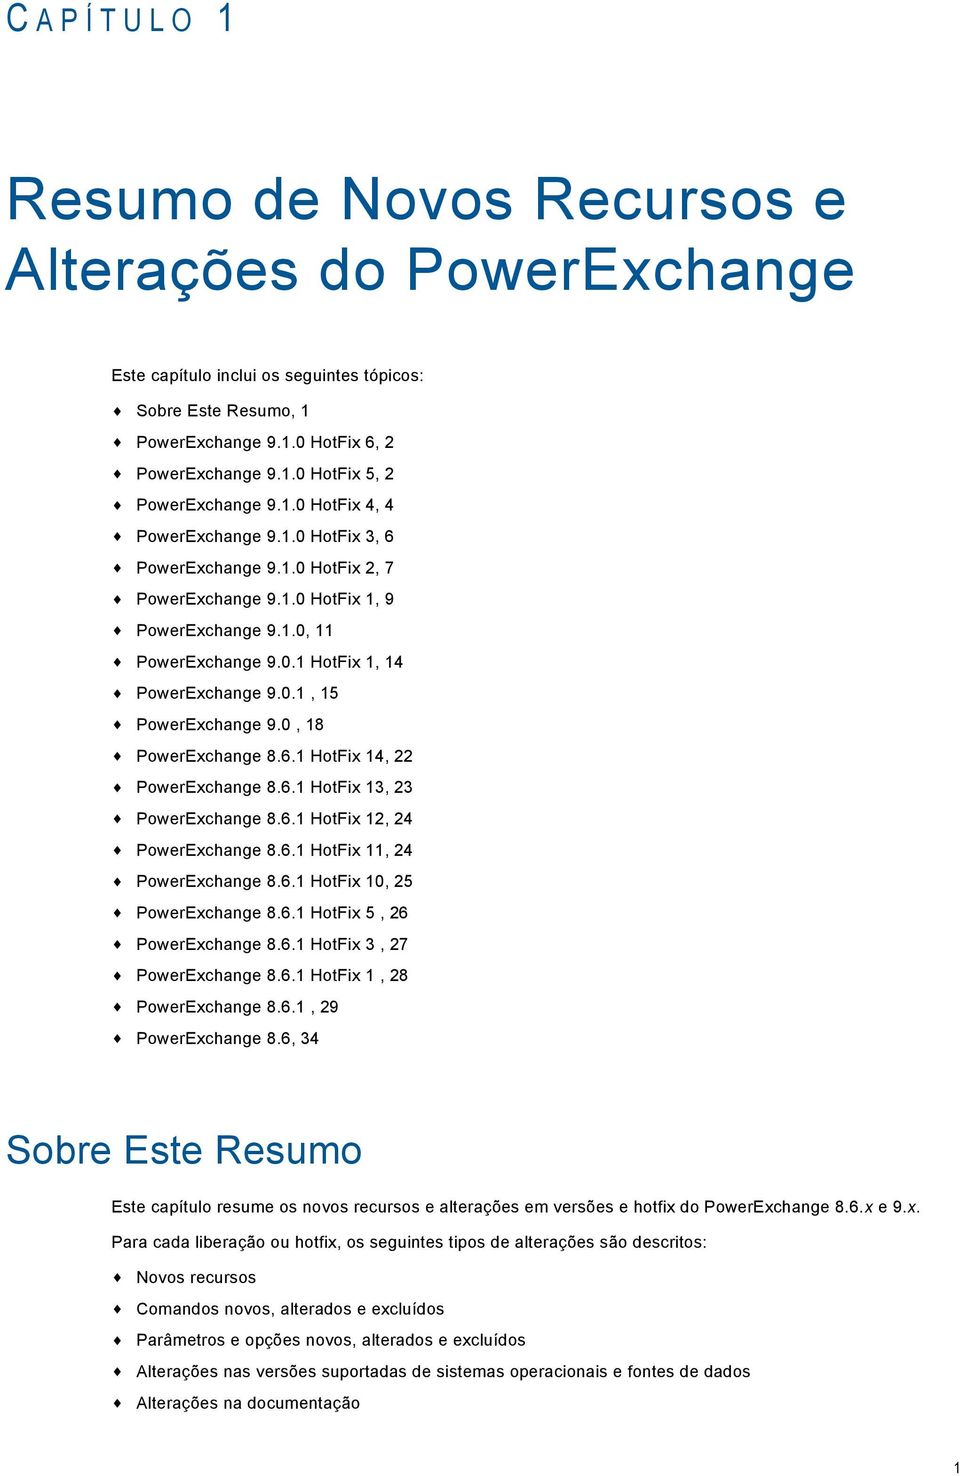 0, 18 PowerExchange 8.6.1 HotFix 14, 22 PowerExchange 8.6.1 HotFix 13, 23 PowerExchange 8.6.1 HotFix 12, 24 PowerExchange 8.6.1 HotFix 11, 24 PowerExchange 8.6.1 HotFix 10, 25 PowerExchange 8.6.1 HotFix 5, 26 PowerExchange 8.